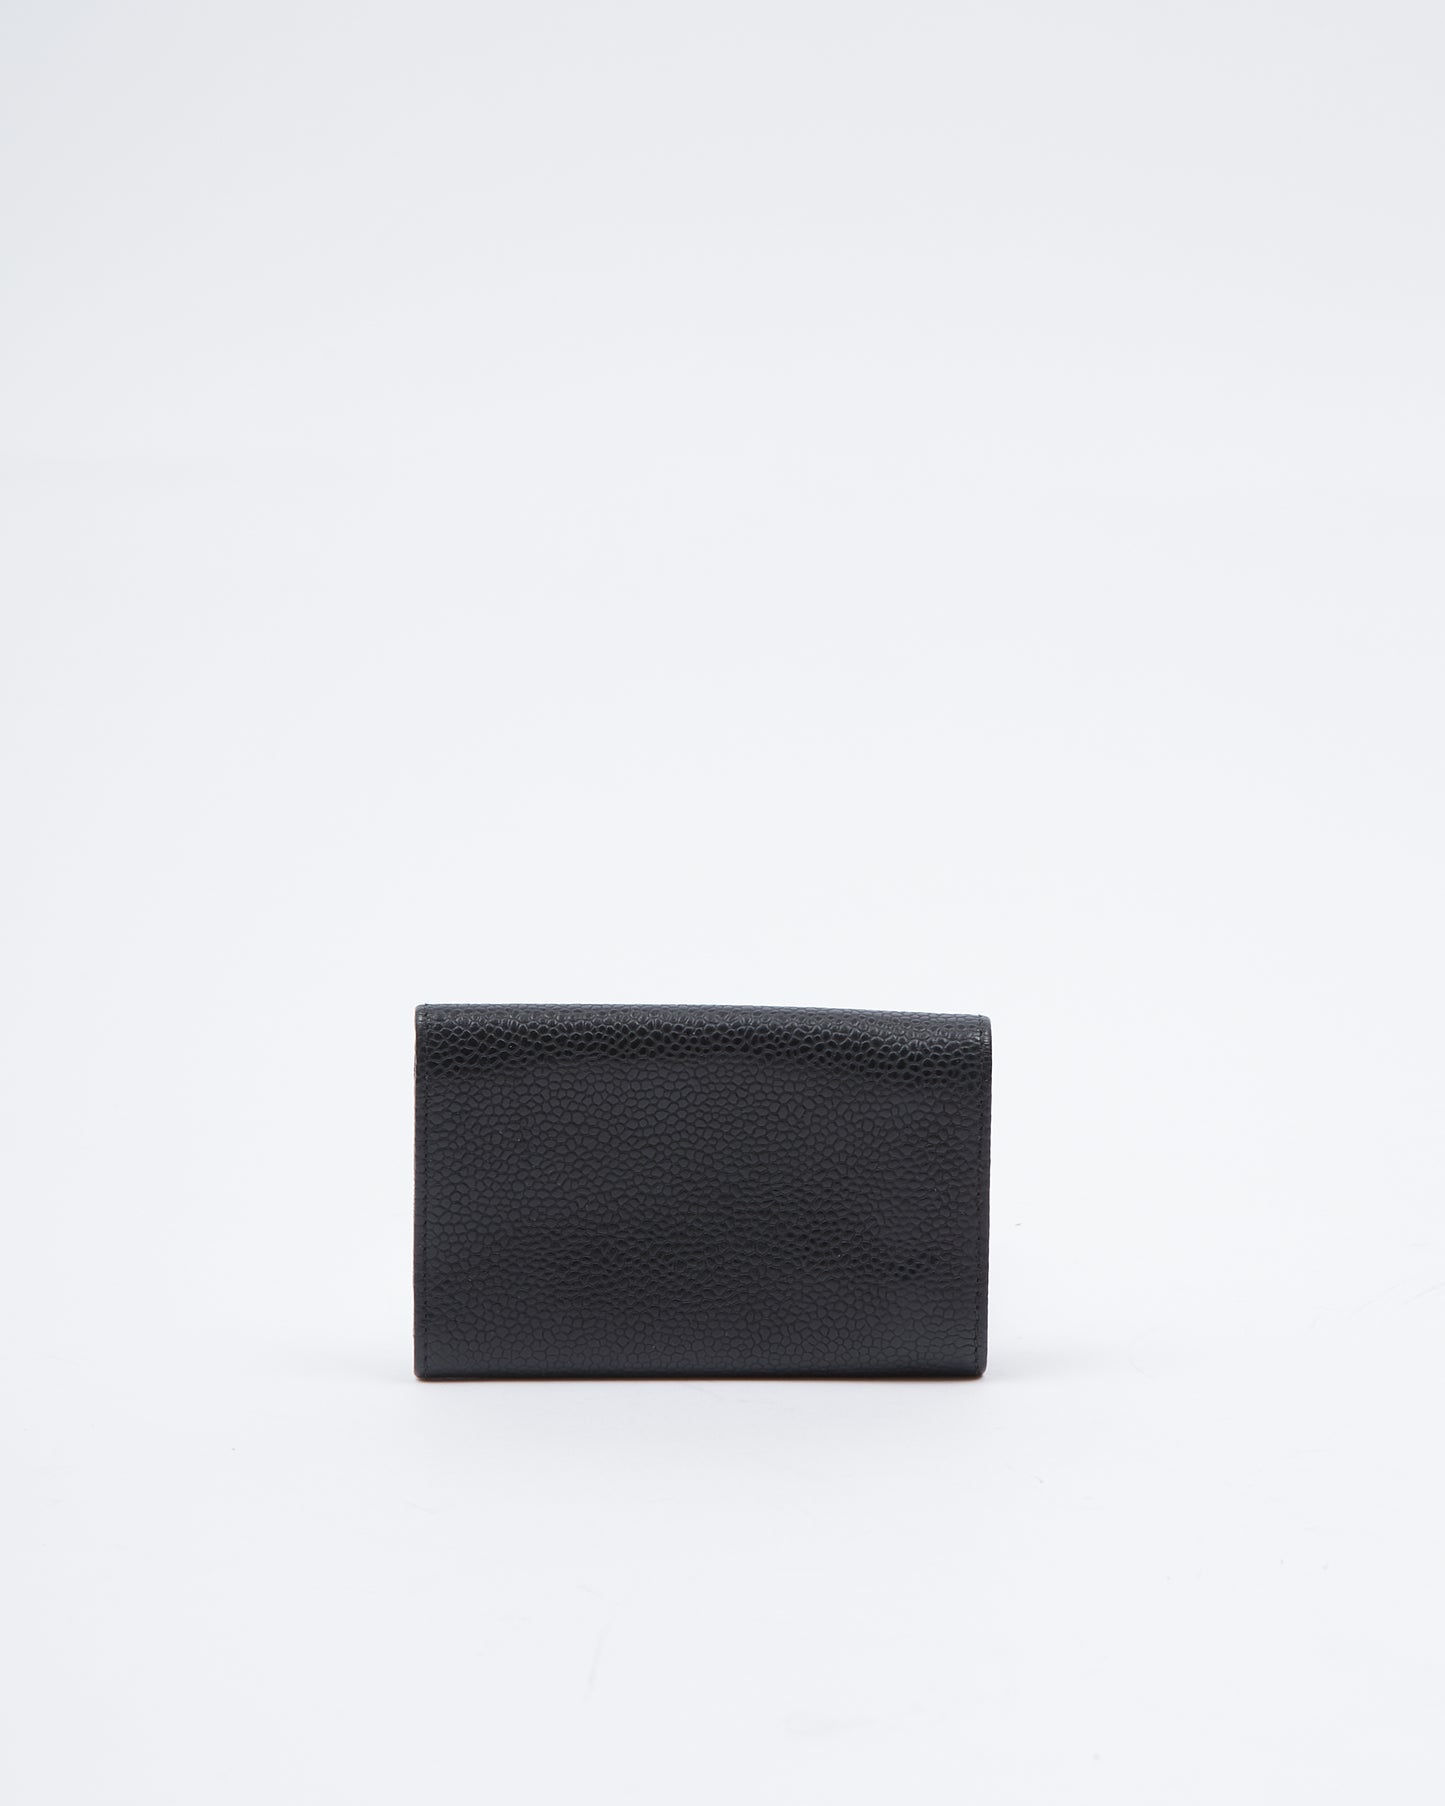 Porte-clés Chanel Black Caviar Timeless CC avec logo imbriqué